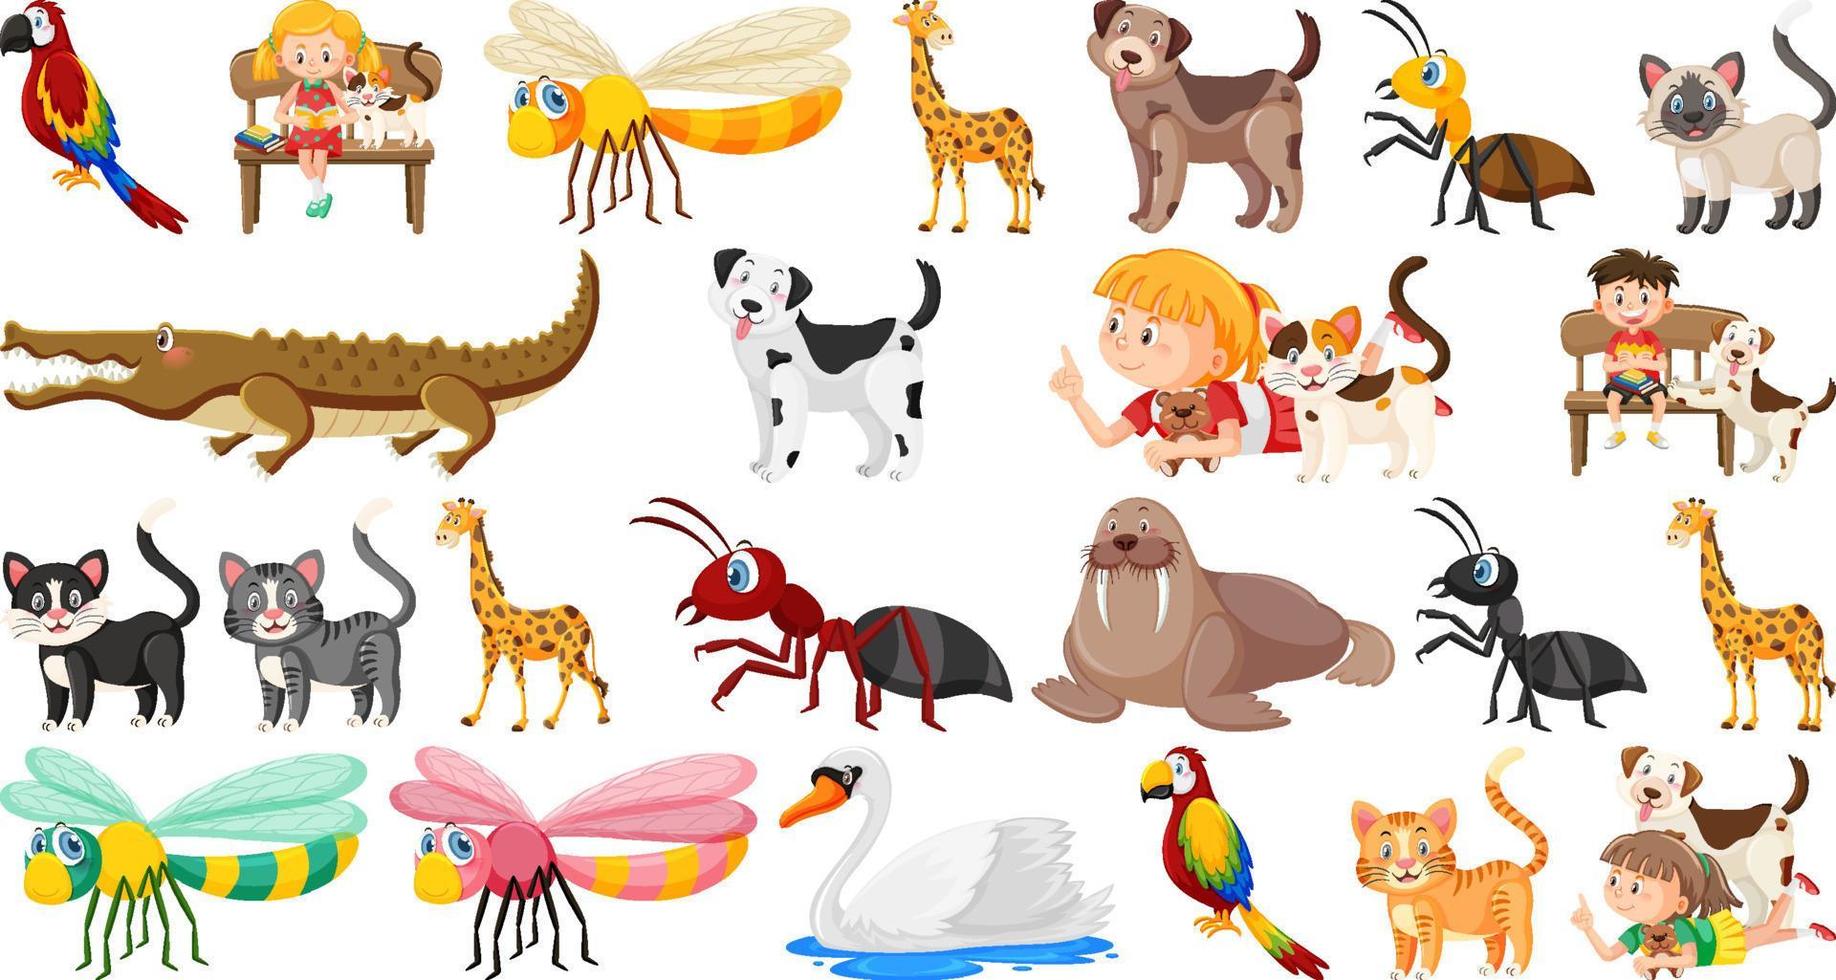 uppsättning av olika vilda djur i tecknad stil vektor